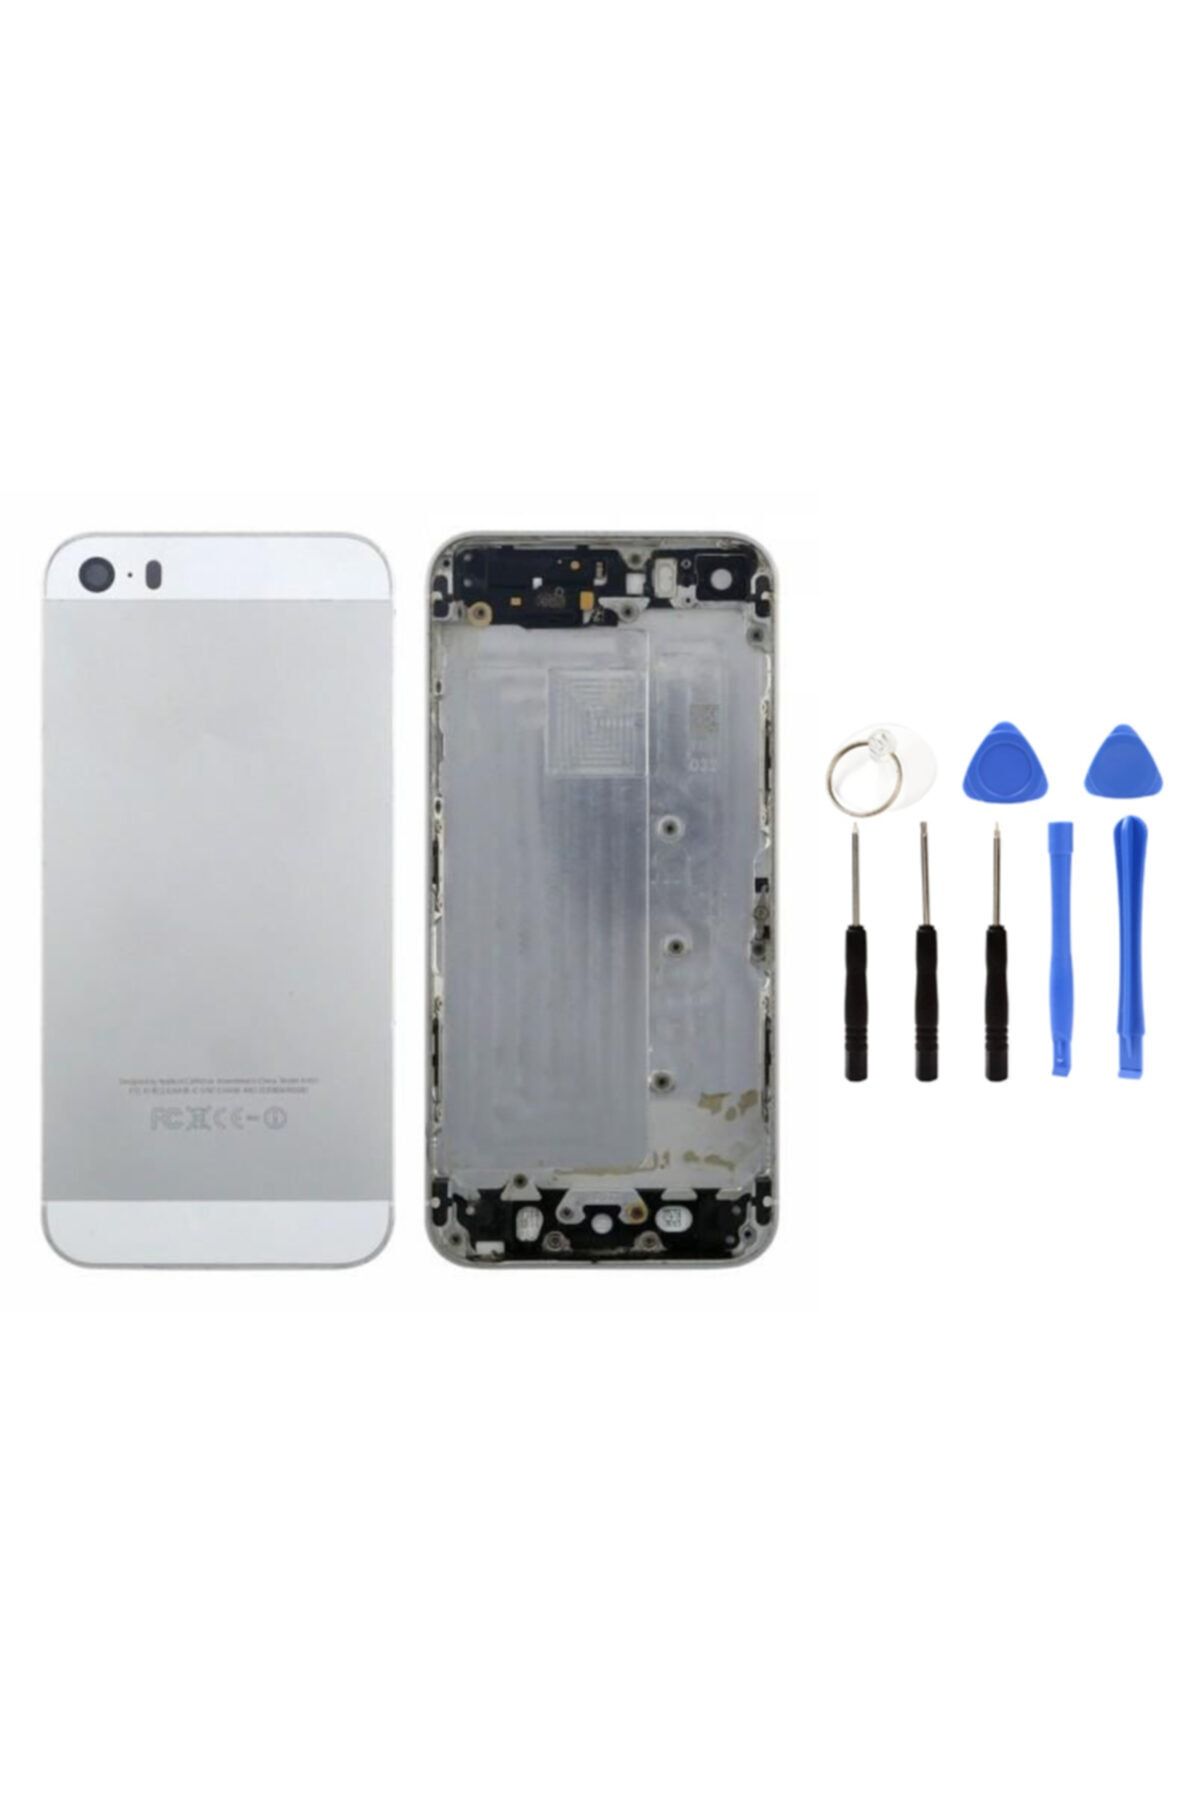 instatech Apple Iphone 5s Boş Kasa + Montaj Seti Hediye - Beyaz